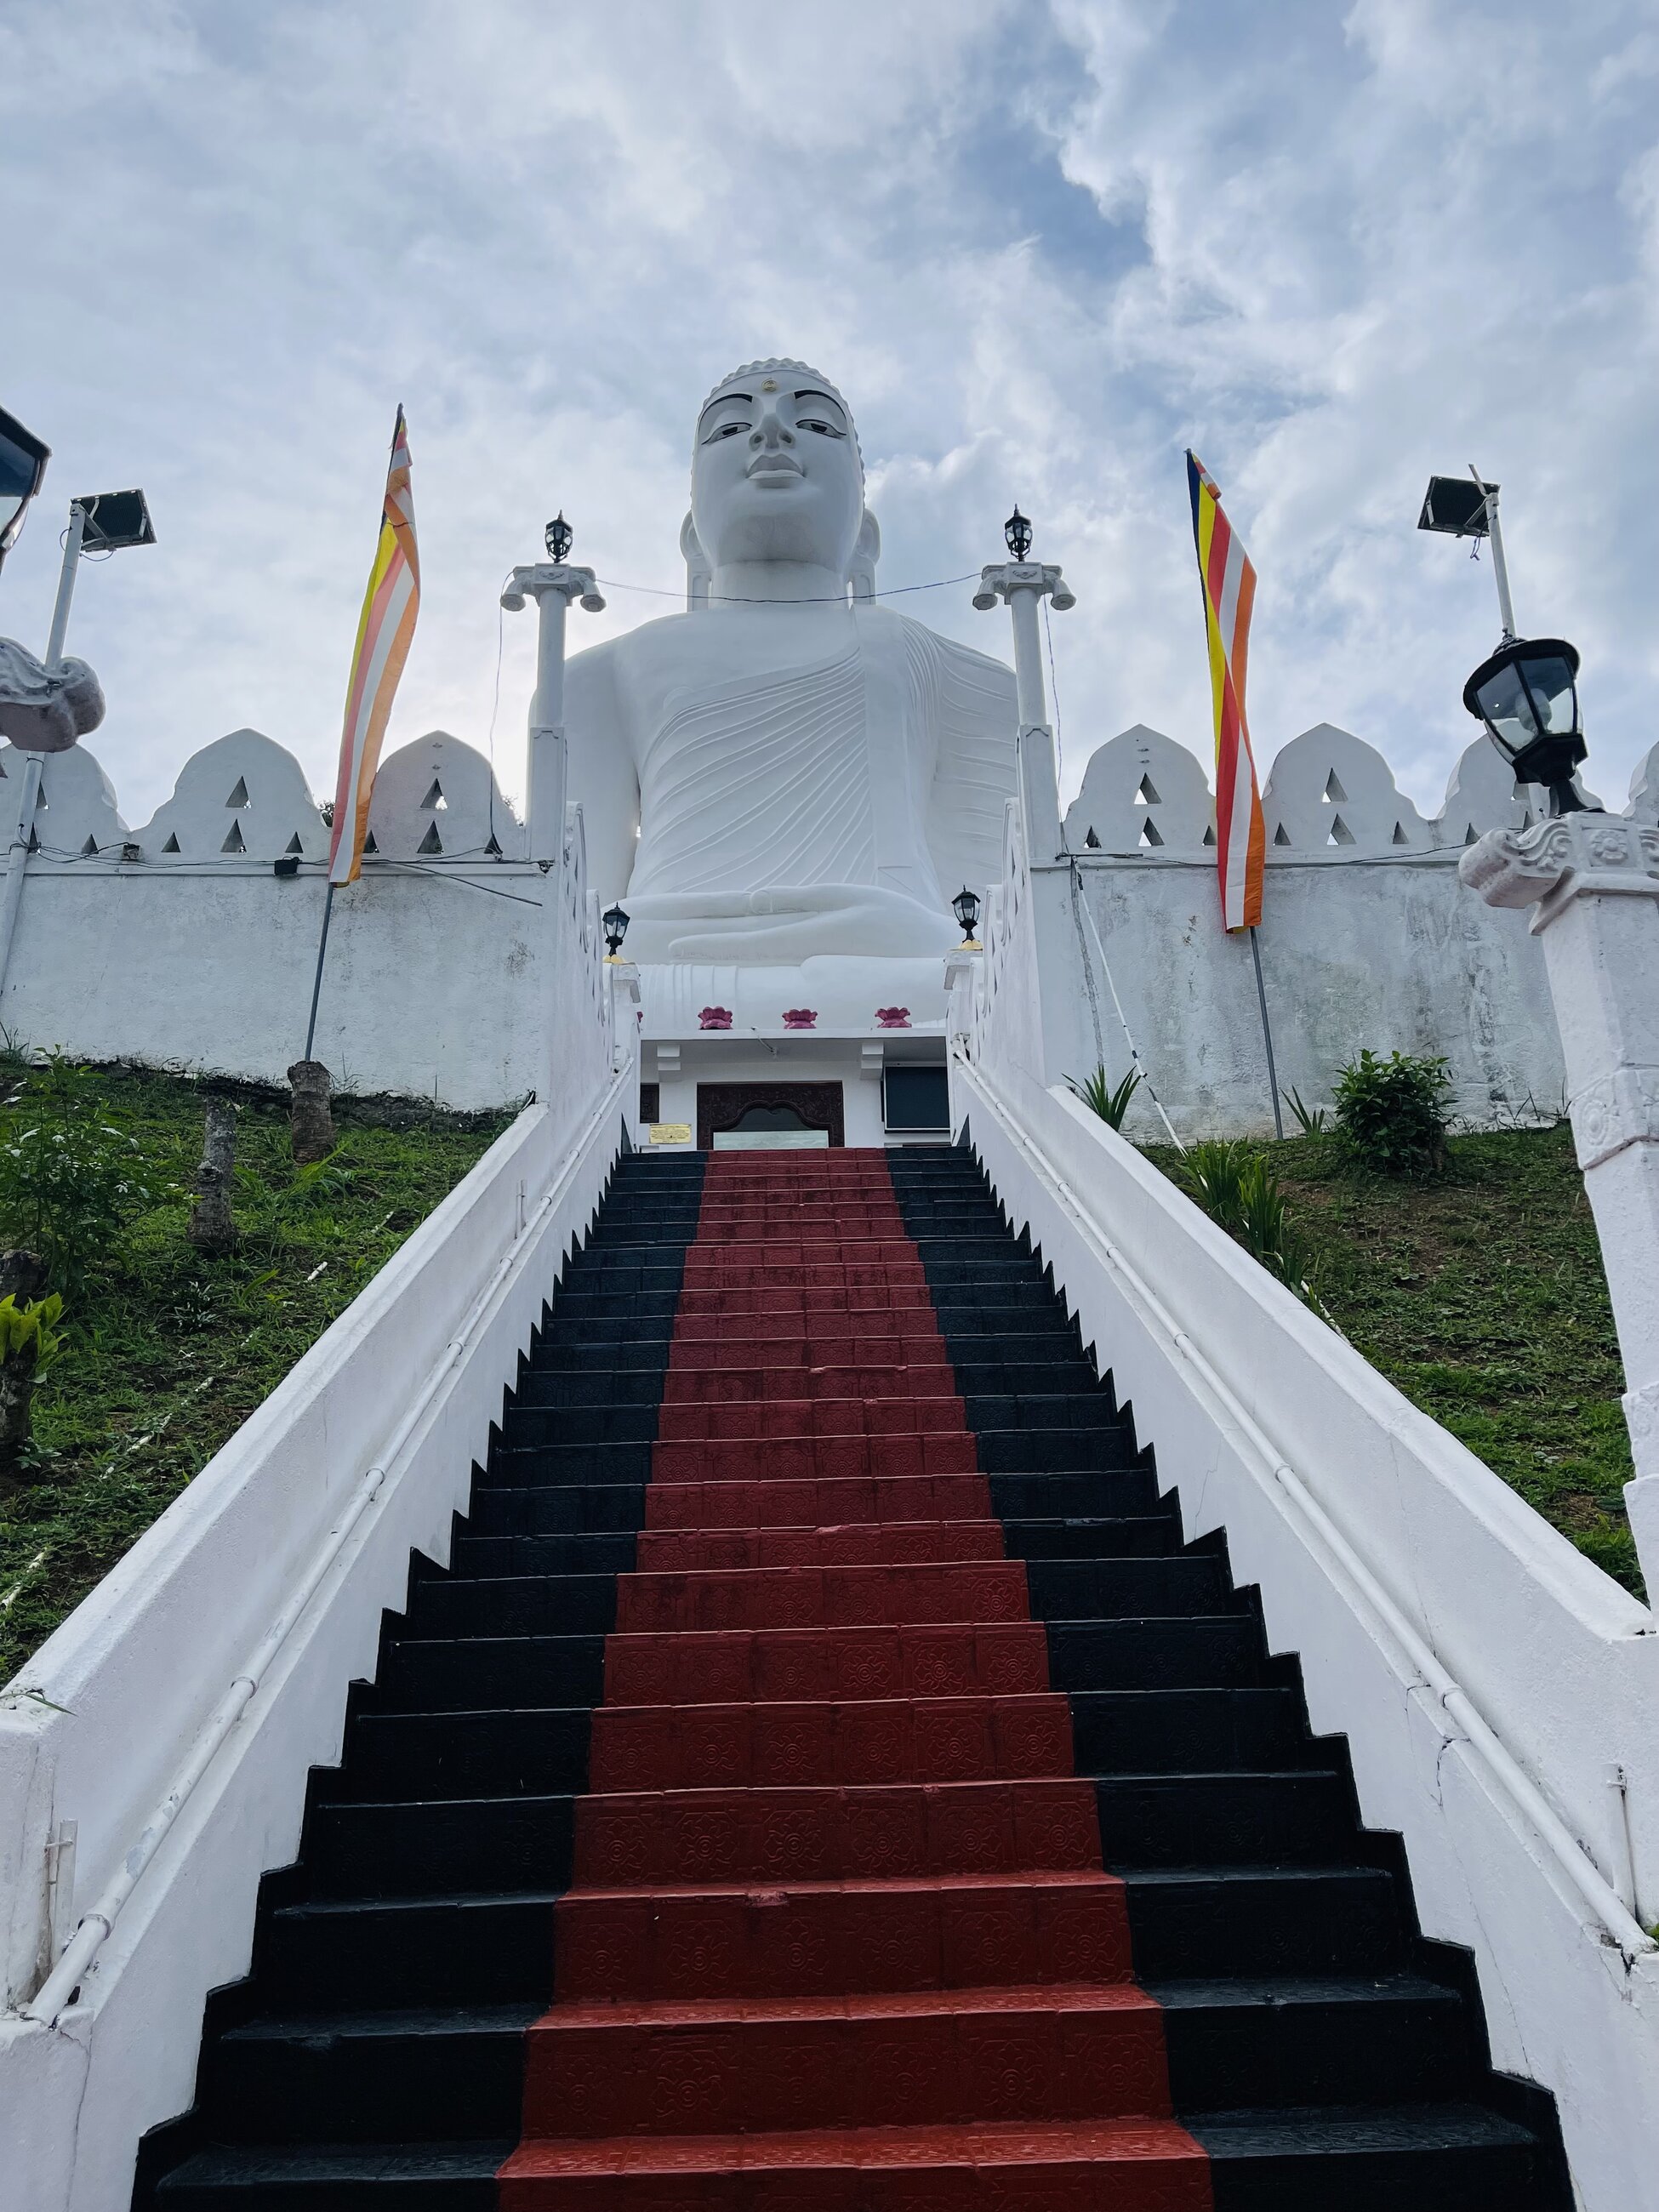 The White Buddha 